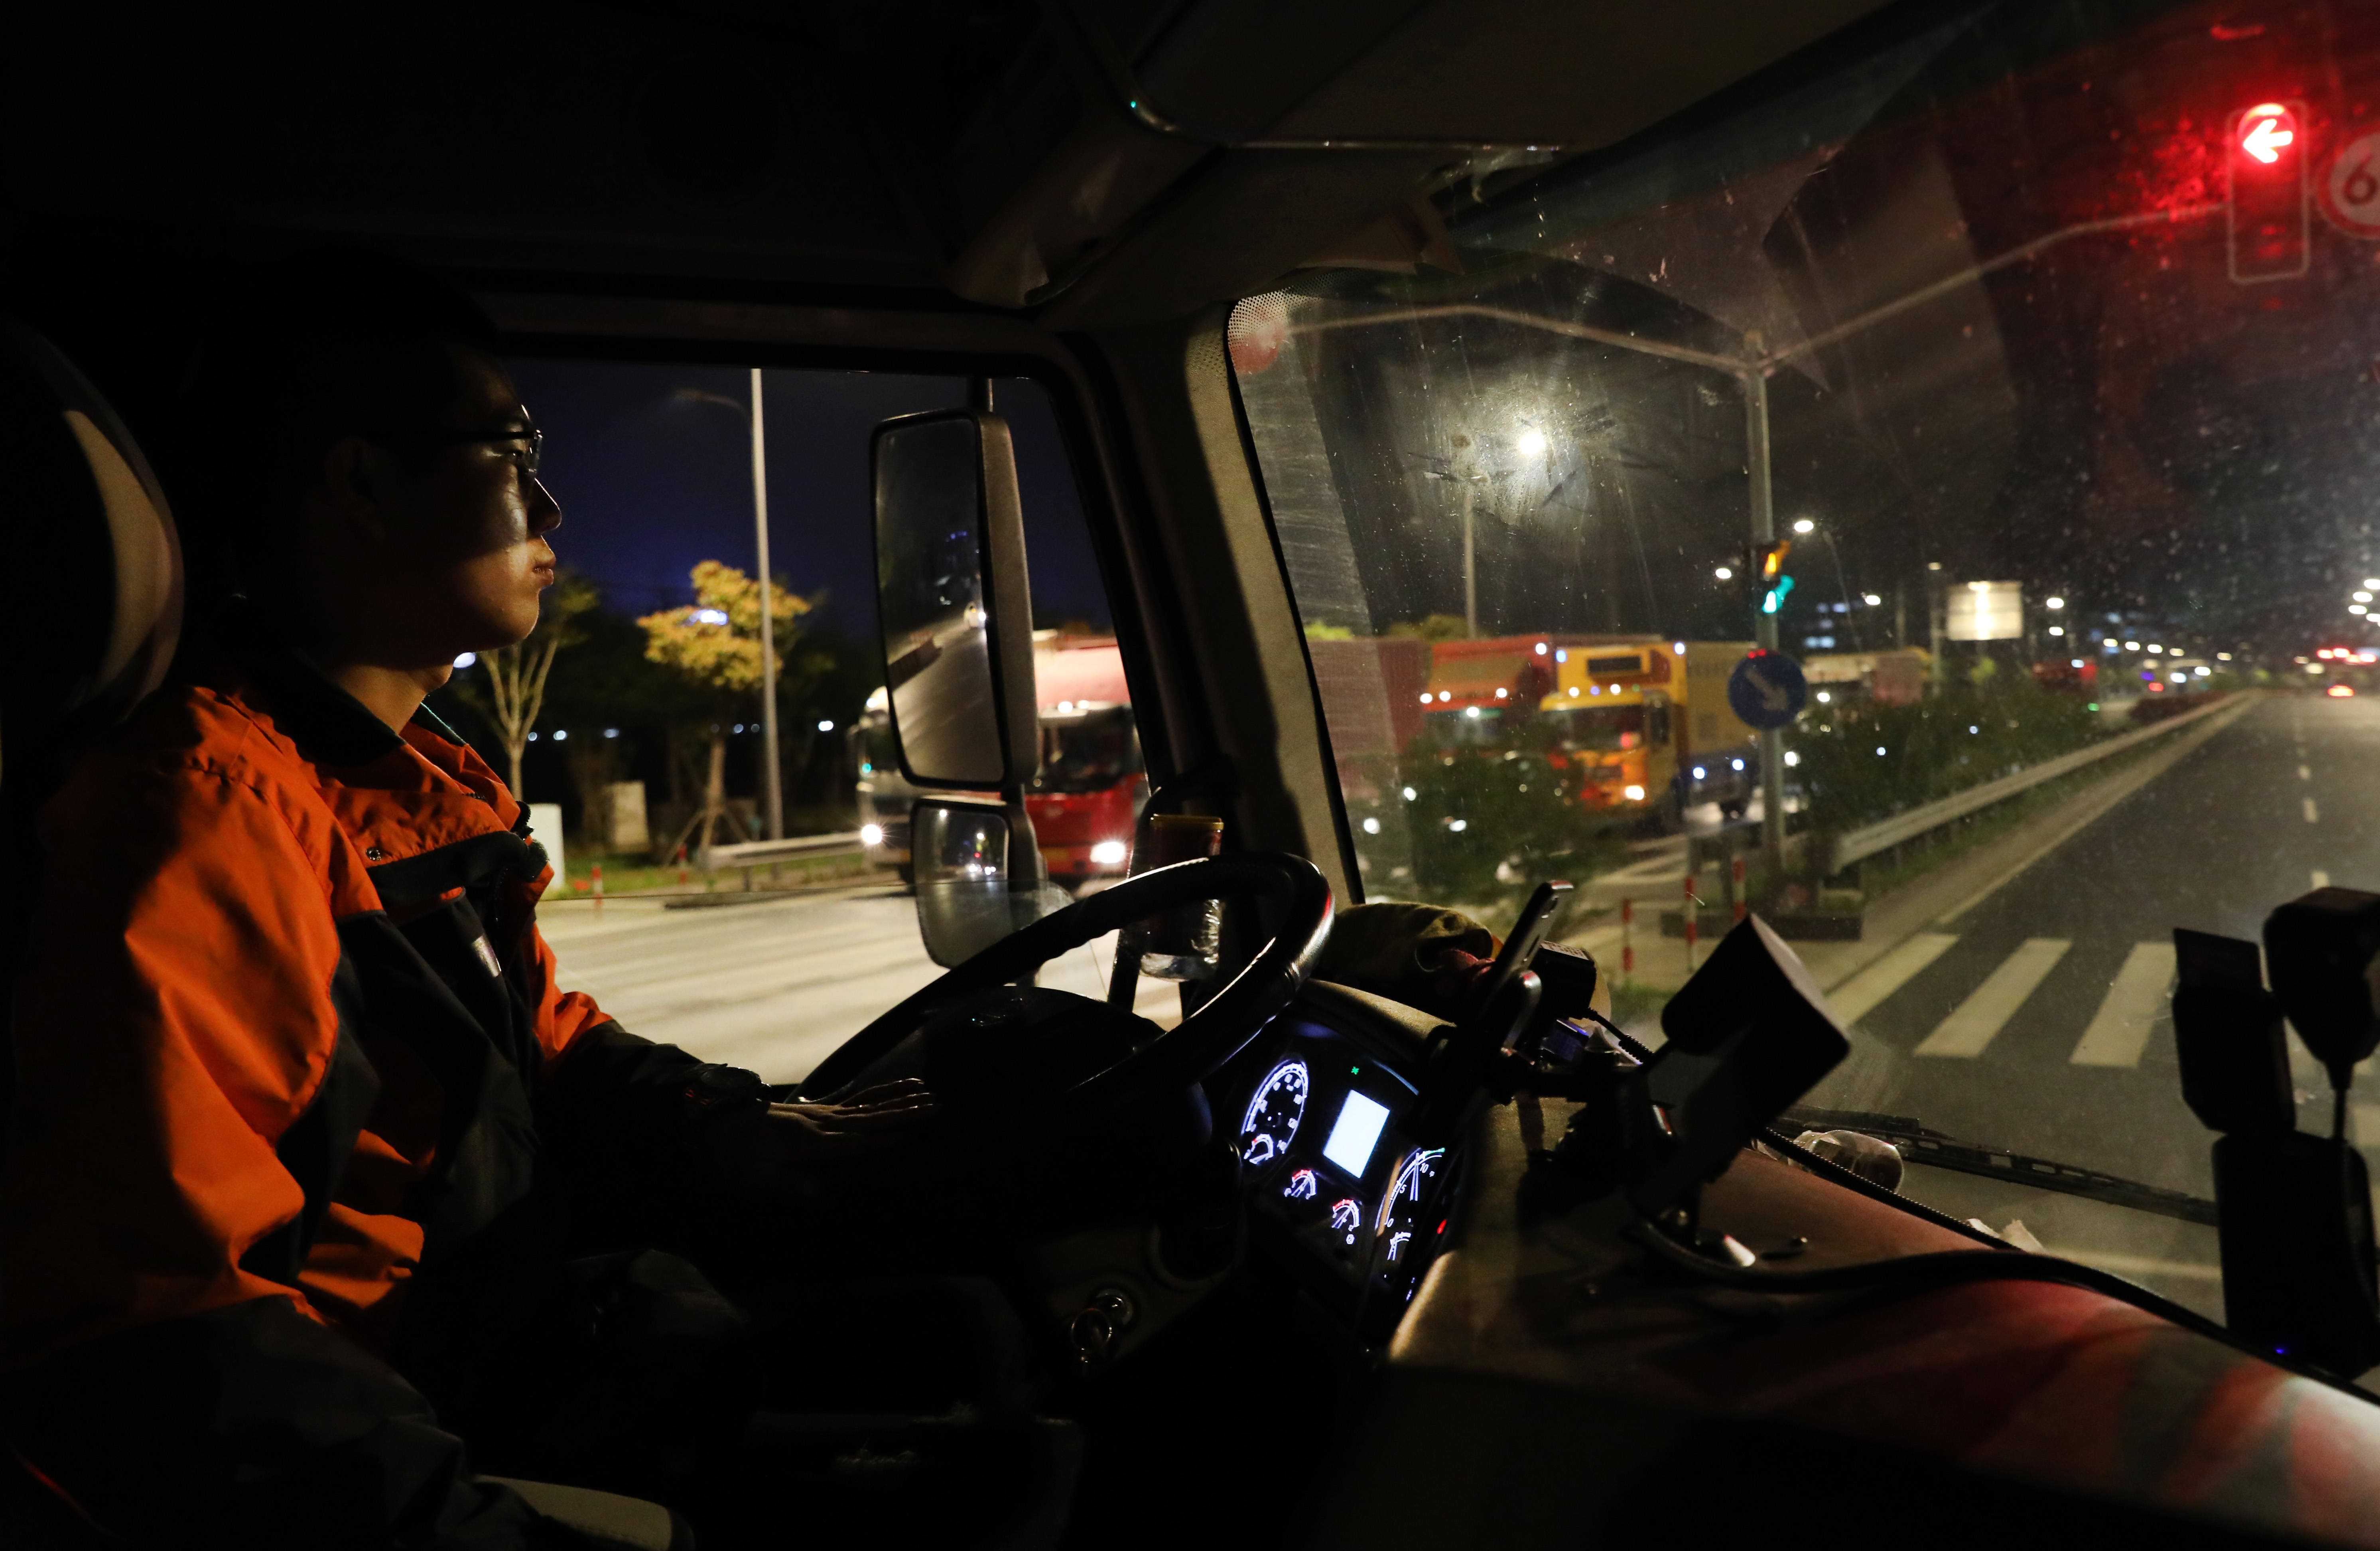 4月15日,卡车司机丁国健驾驶车辆出发,今晚他的目的地是距离上海300